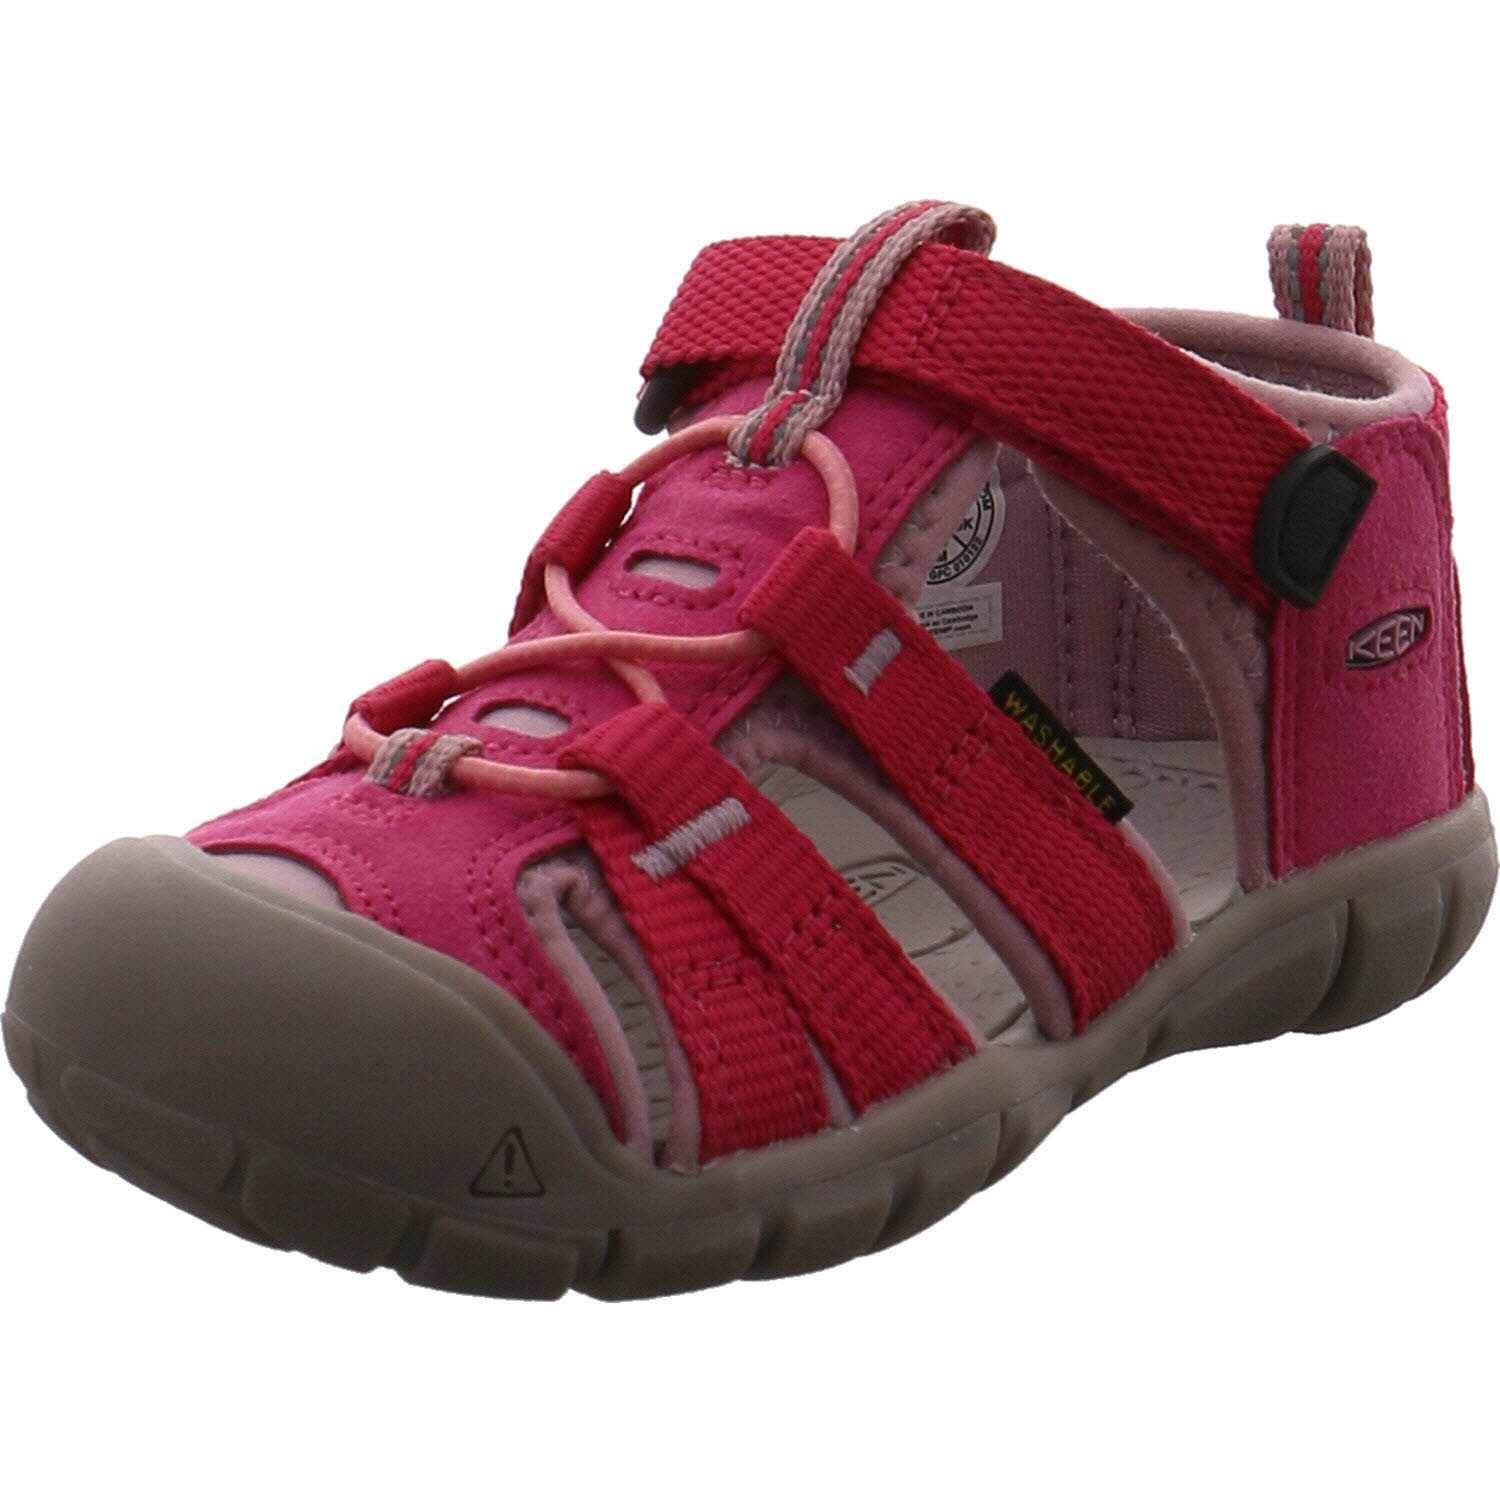 Mädchen Sandale von Keen auch in Pink erhältlich